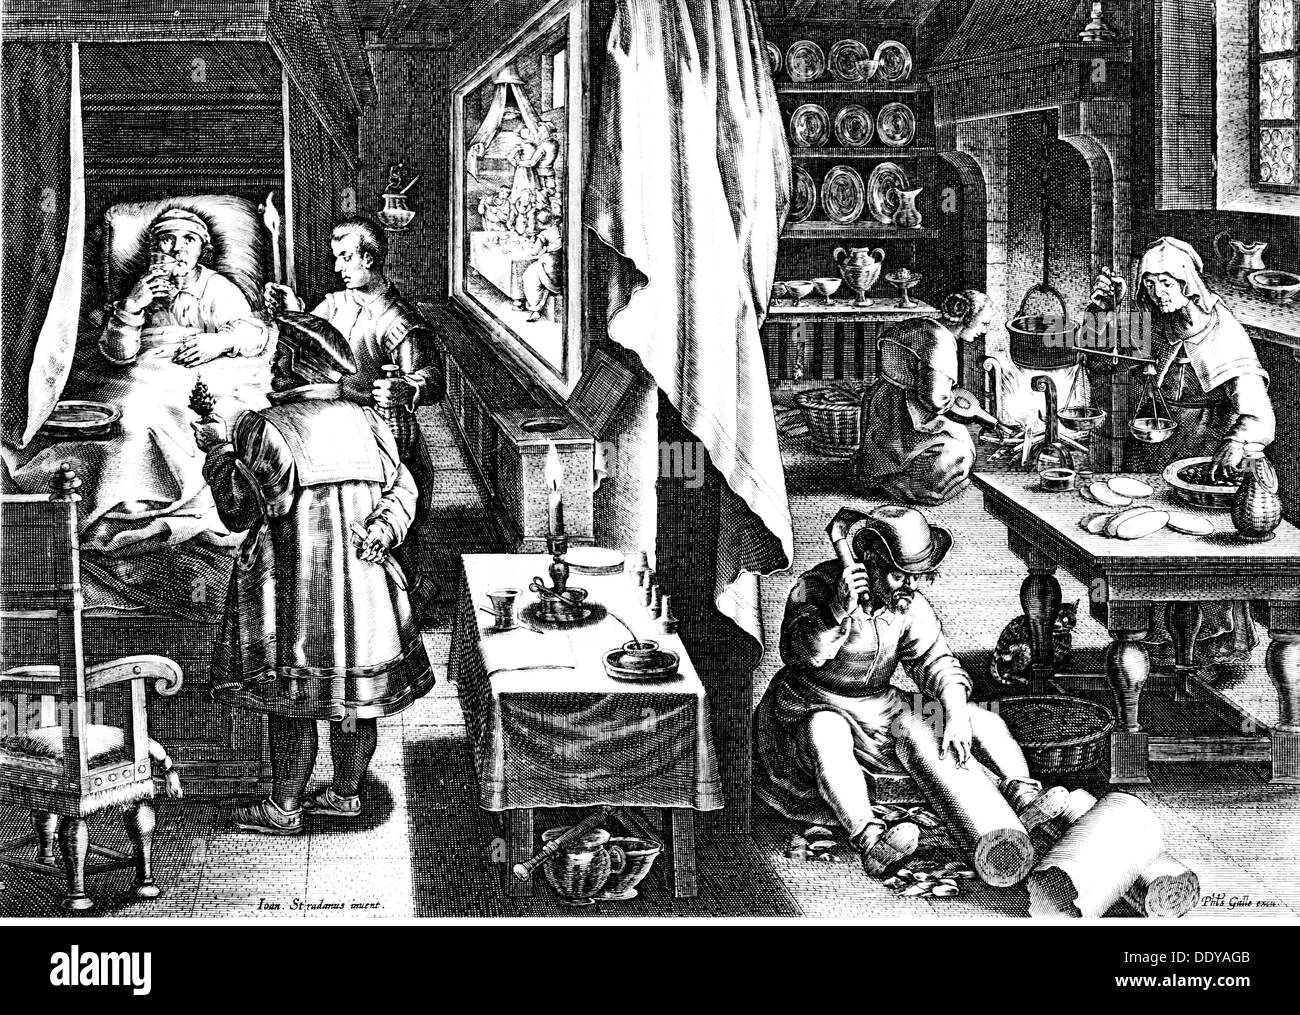 Medizin, sexuell übertragbare Krankheiten, Syphilis, guajacum als Heilmittel gegen die Krankheit, nach Zeichnung von Jan van der Straet (1523 - 1605), Kupferstich von J.Galle, circa 1570, Artist's Urheberrecht nicht geklärt zu werden. Stockfoto